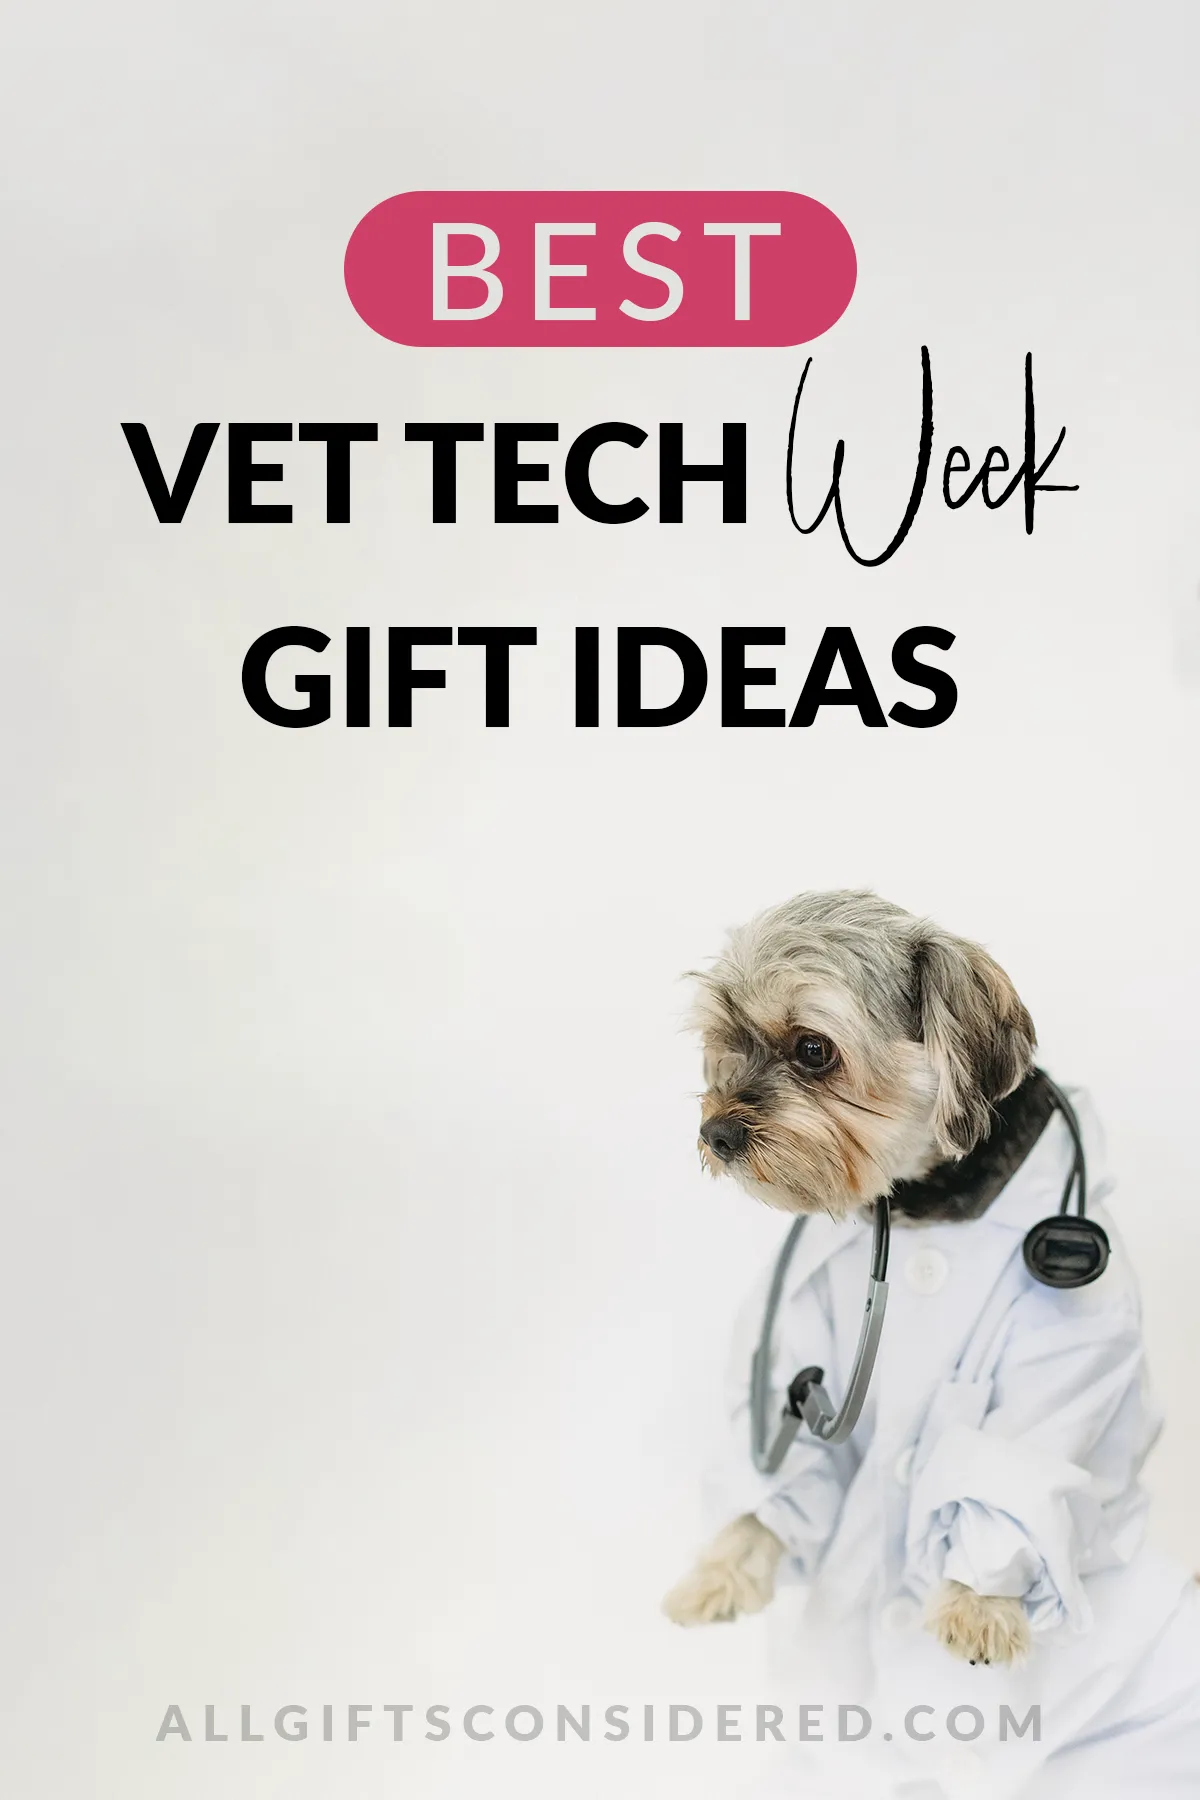 vet tech week gift ideas - feature image